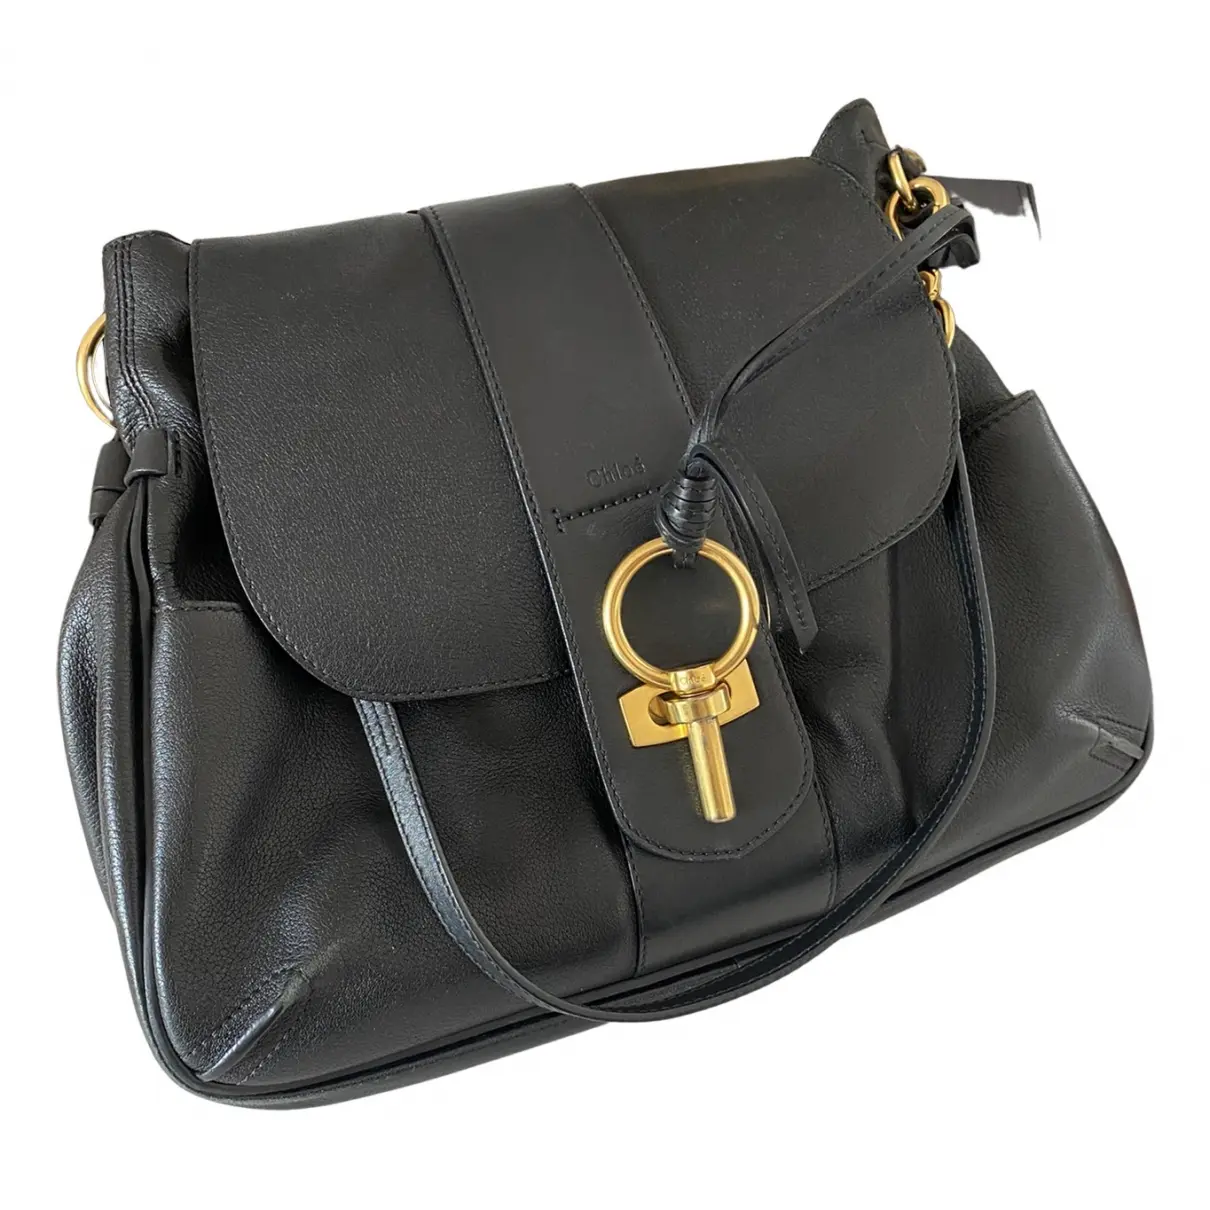 Lexa leather handbag Chloé